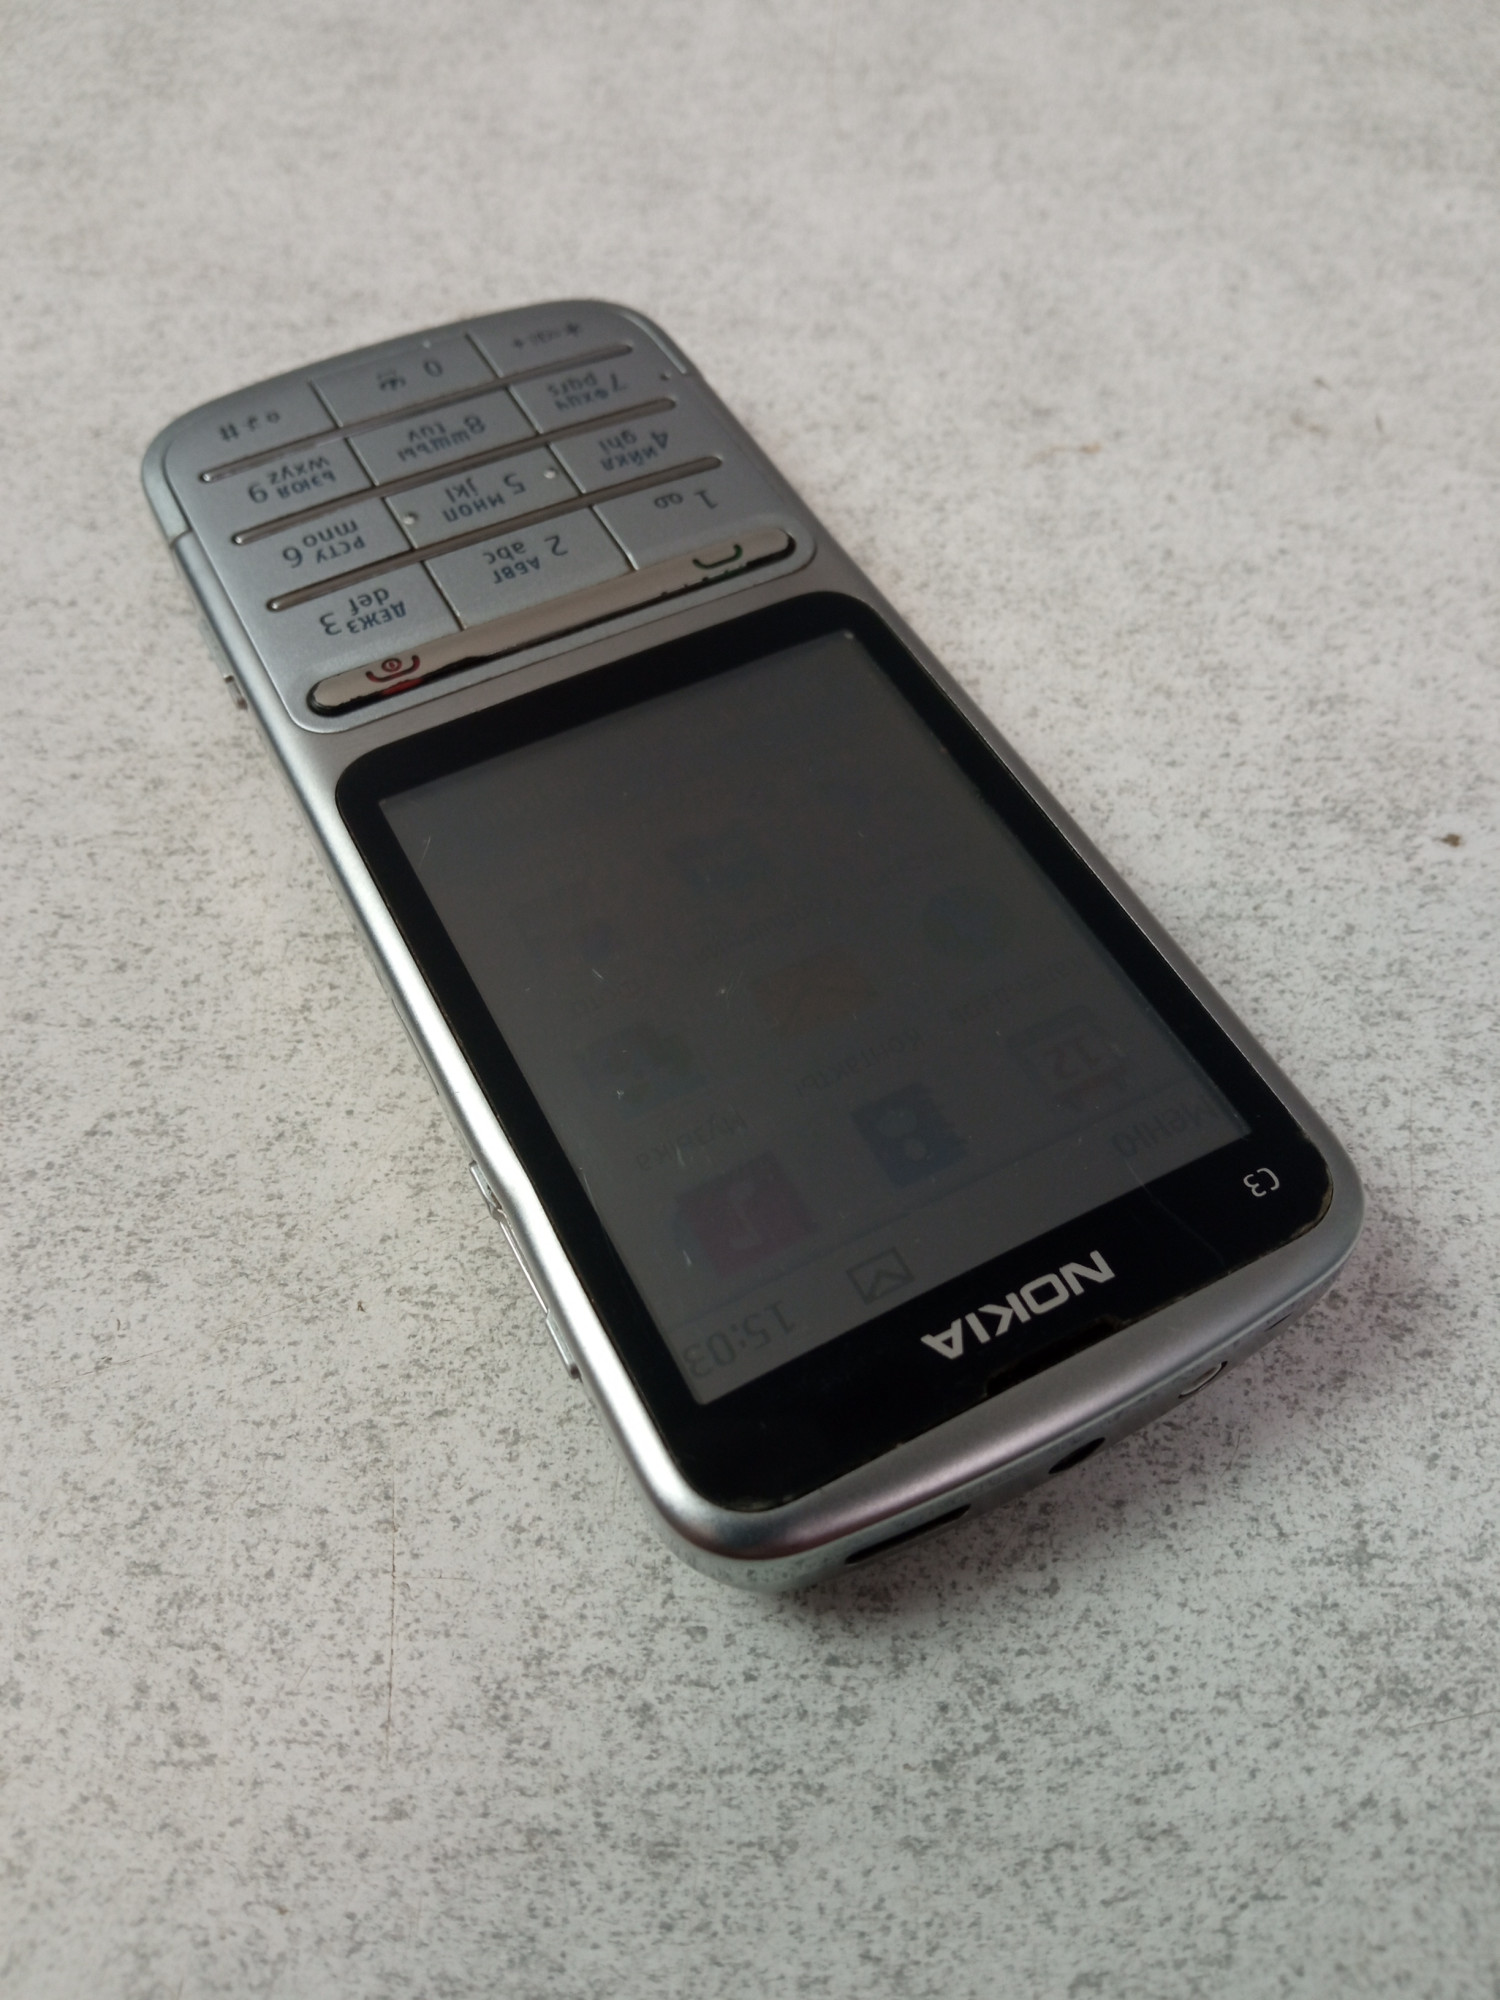 Nokia C3-01 5